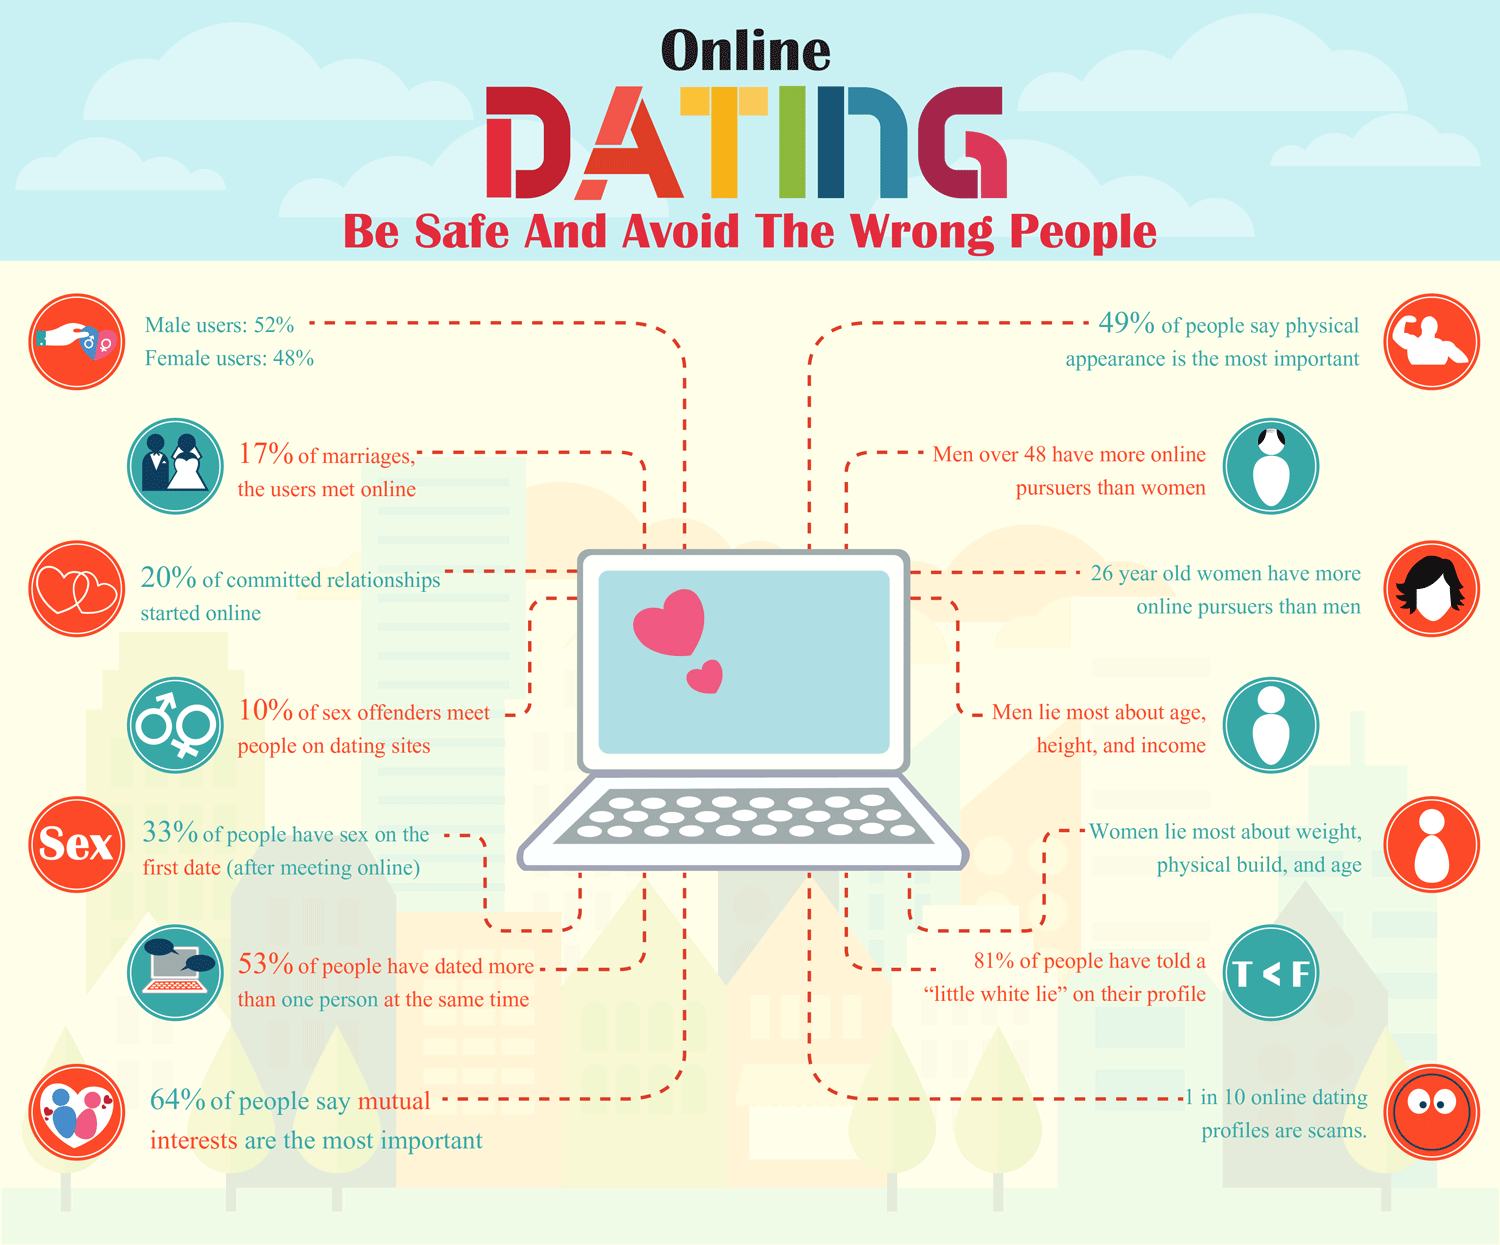 Welches sind die online-dating-sites